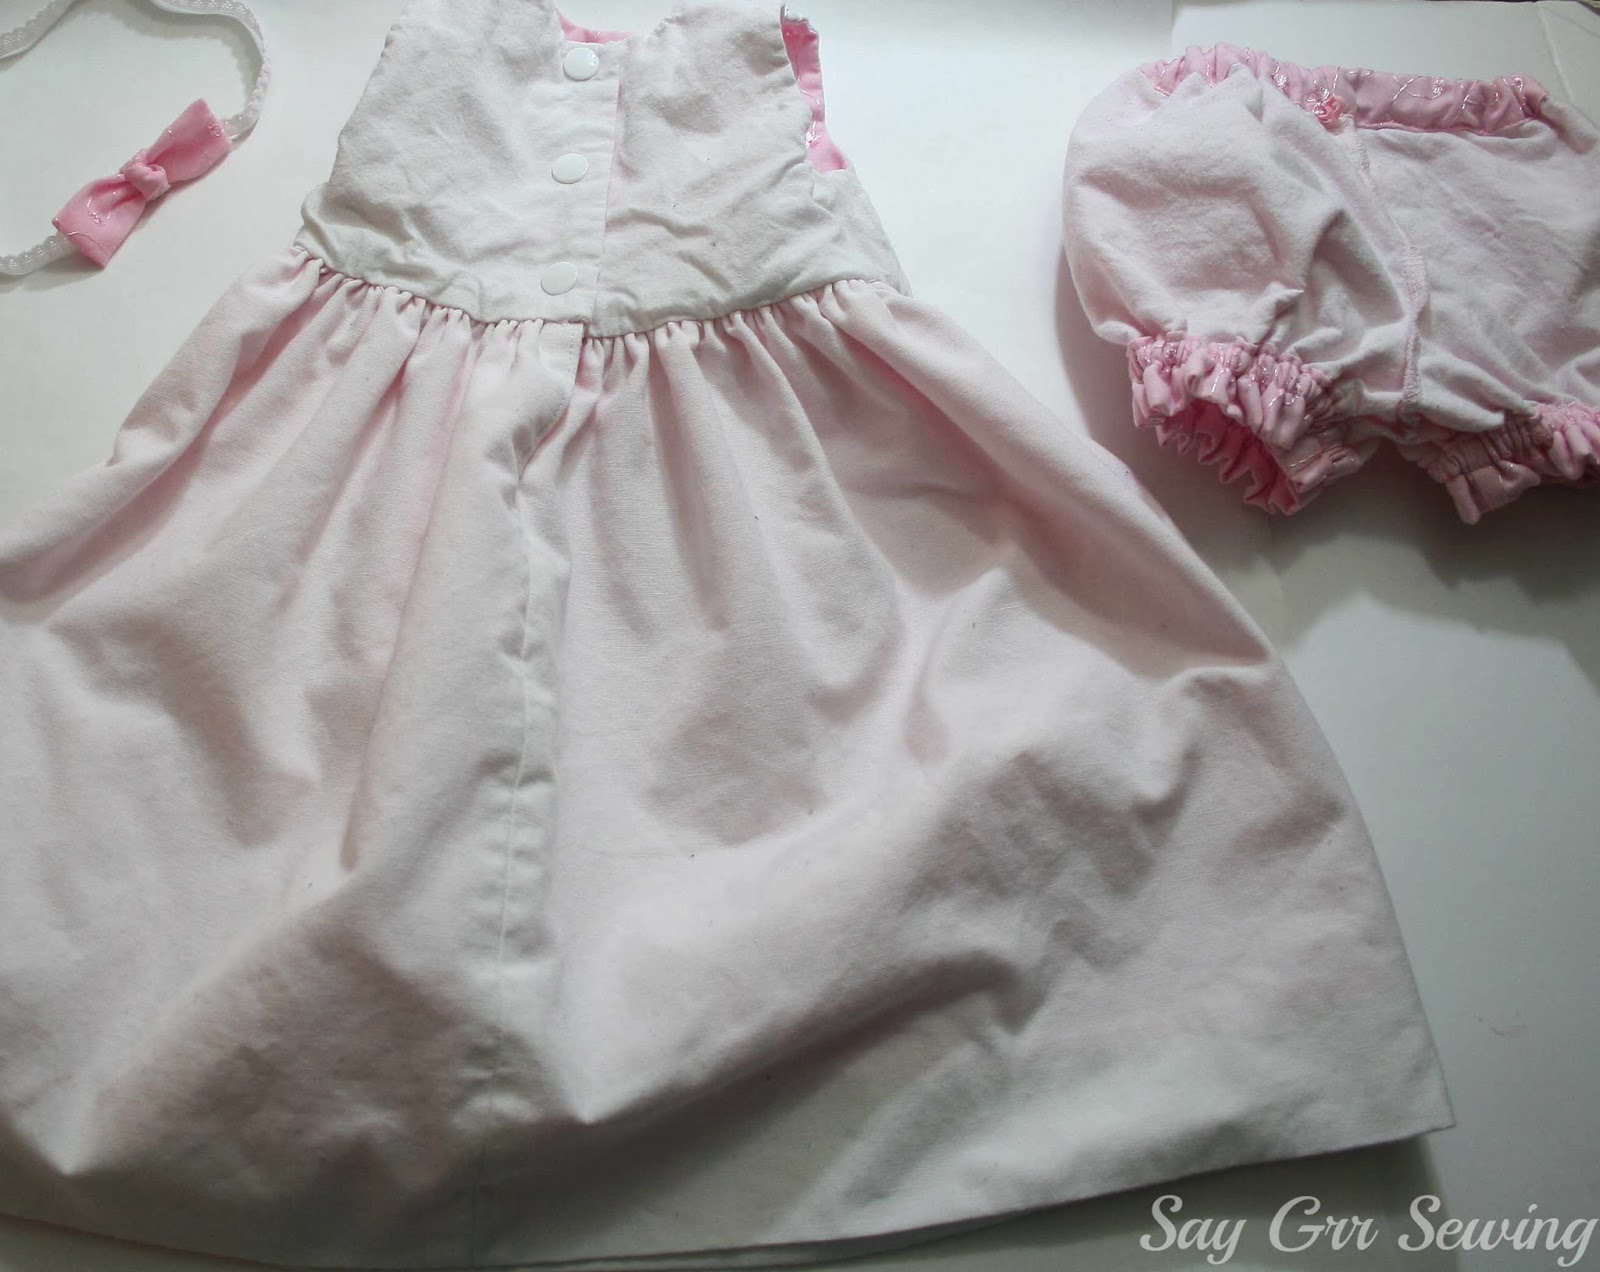 Say Grr Sewing: Pink Eyelet Baby Geranium